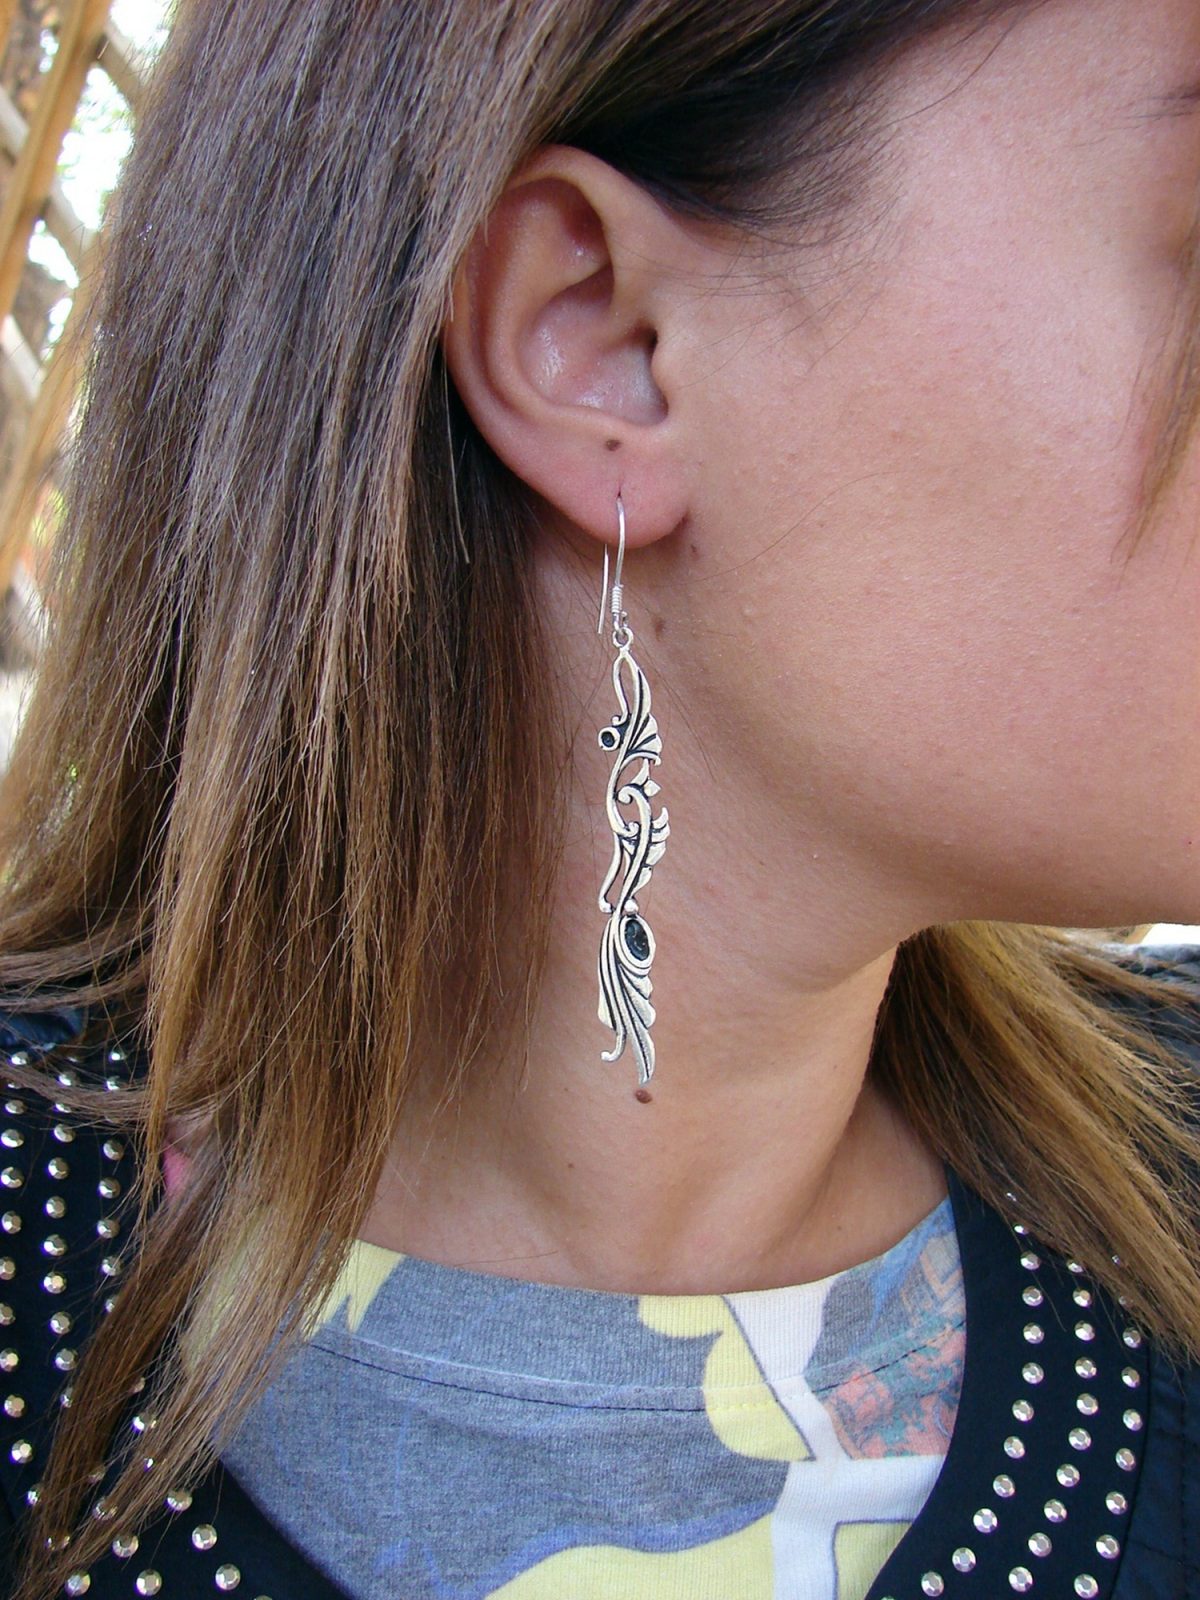 Long Earrings Sterling Silver 925